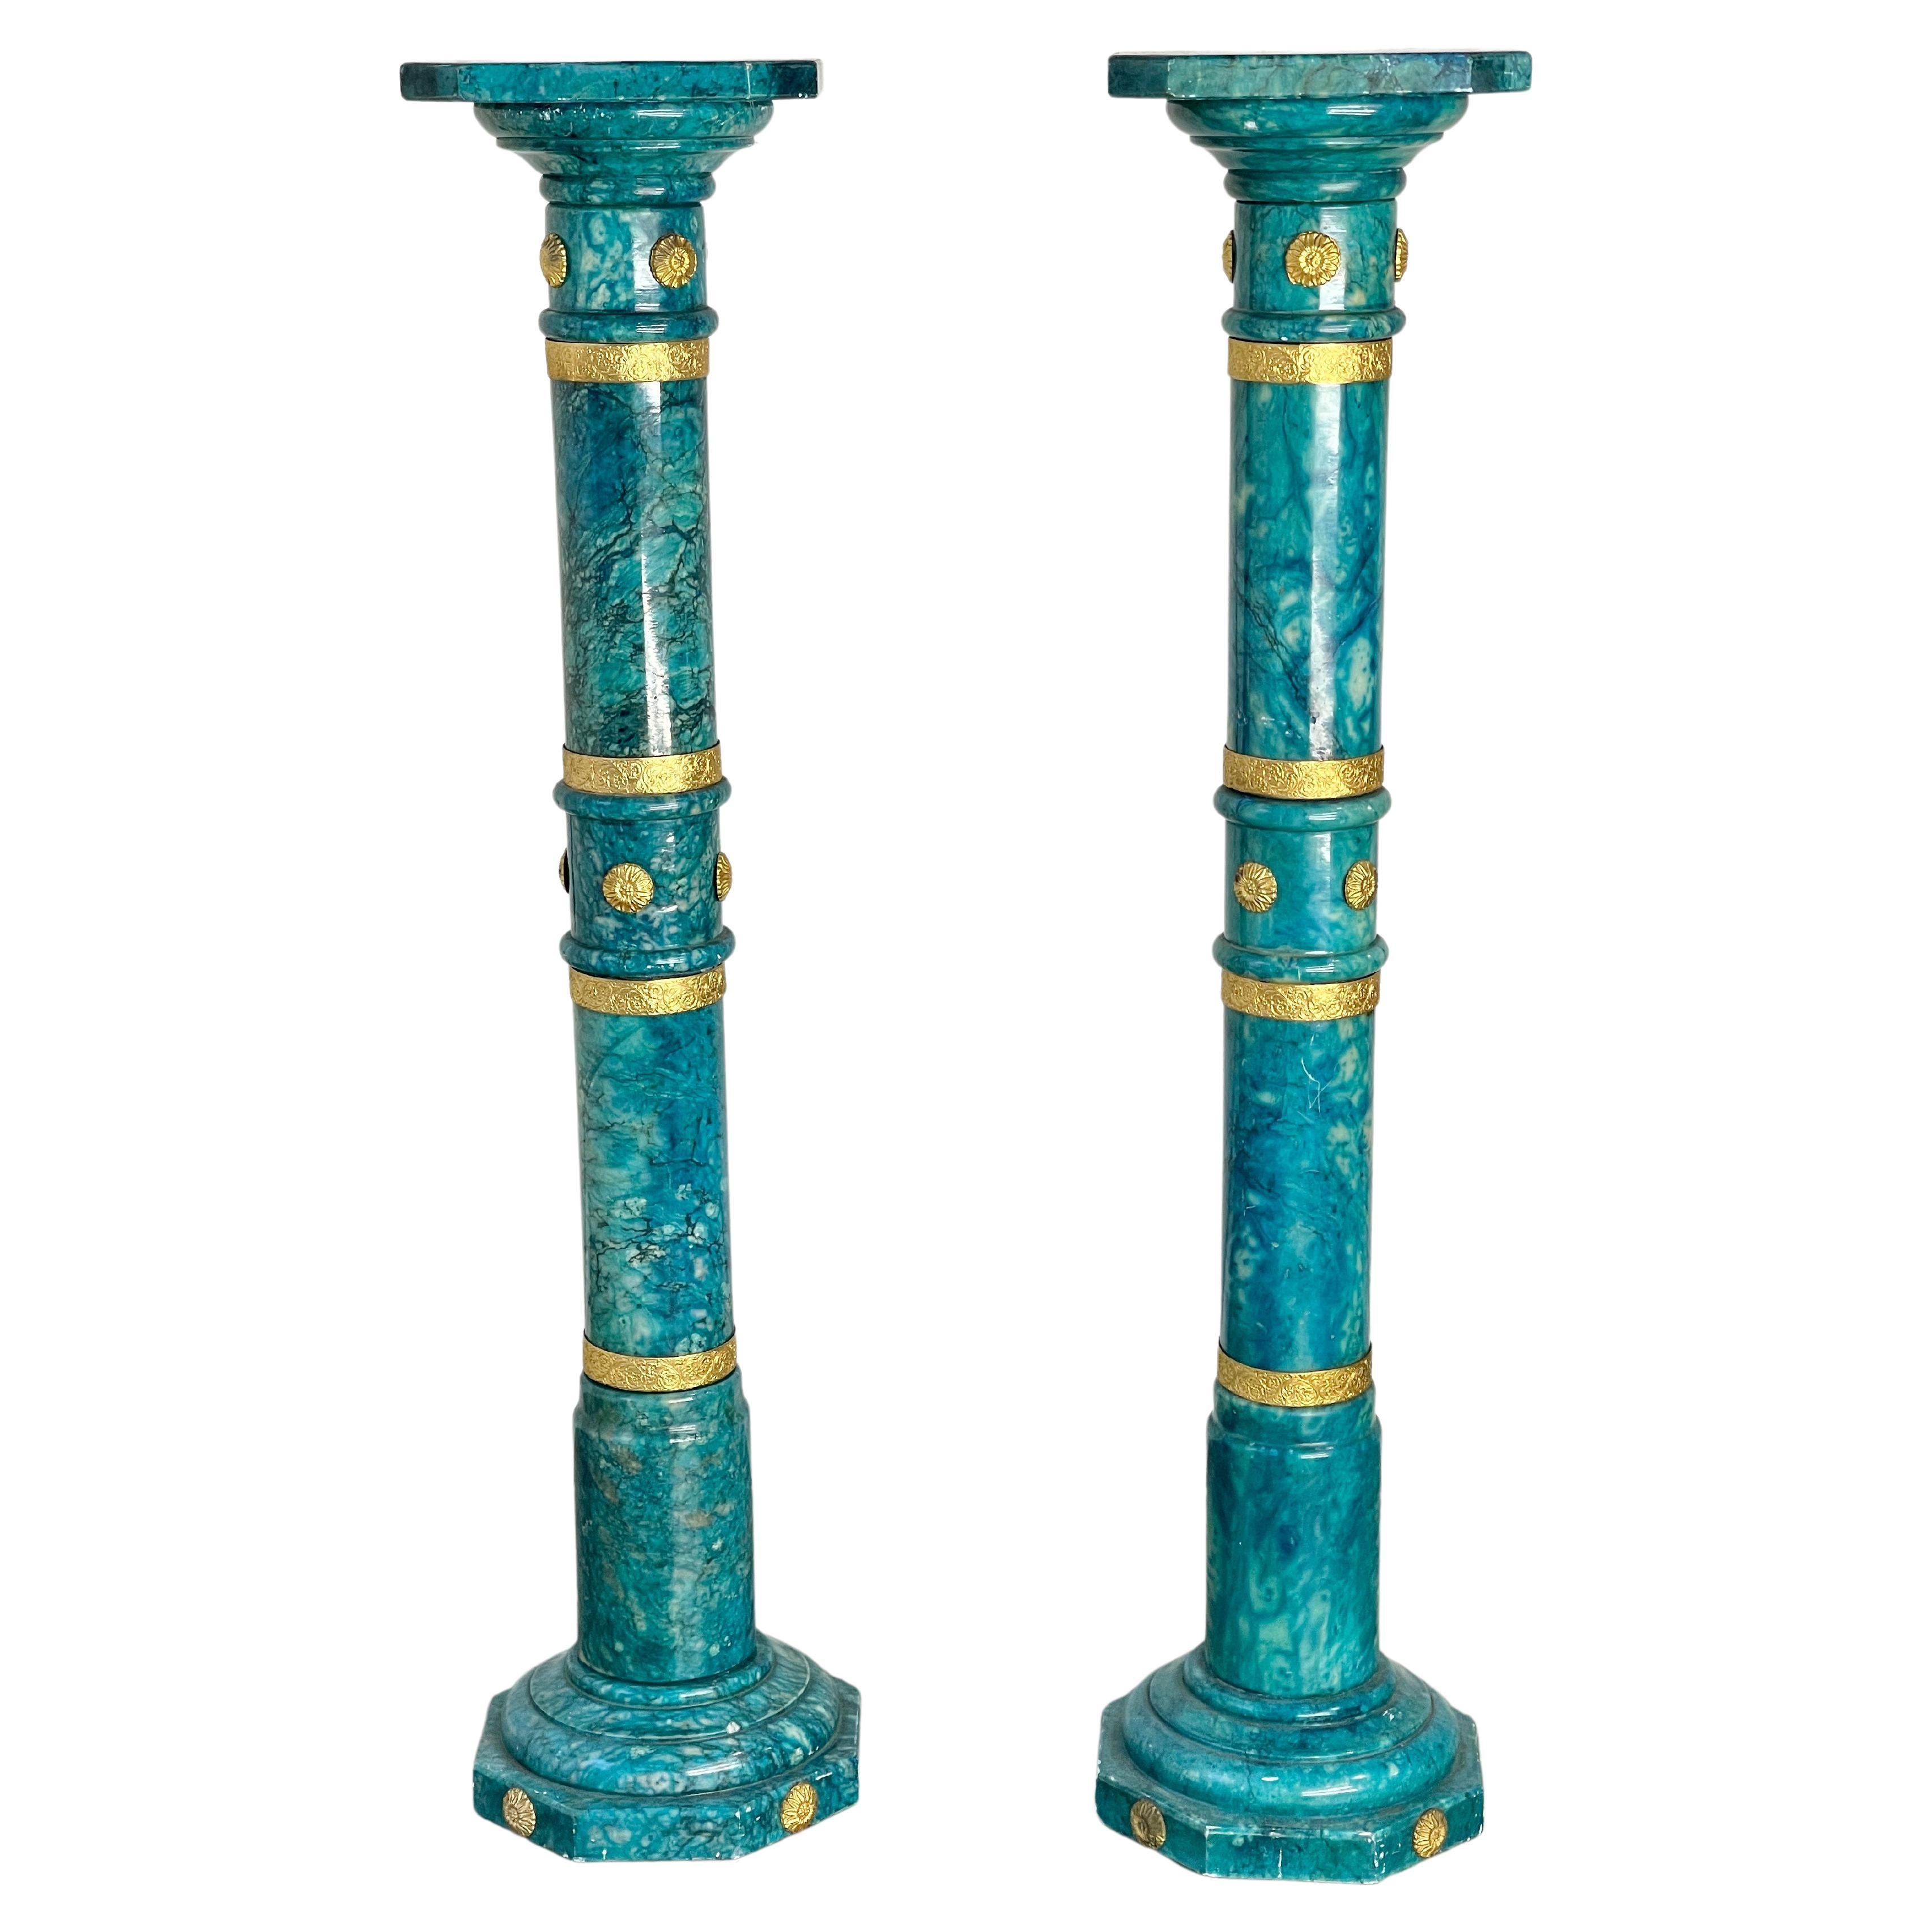 Ein Paar italienische Alabaster-Säulen mit lebhafter blau-grüner Farbe (nicht ganz türkis), verziert mit vergoldeten Messingbändern und Knopfmedaillons.
Ihre außergewöhnliche Farbe scheint mit einem durchdringenden, transparenten Farbstoff oder